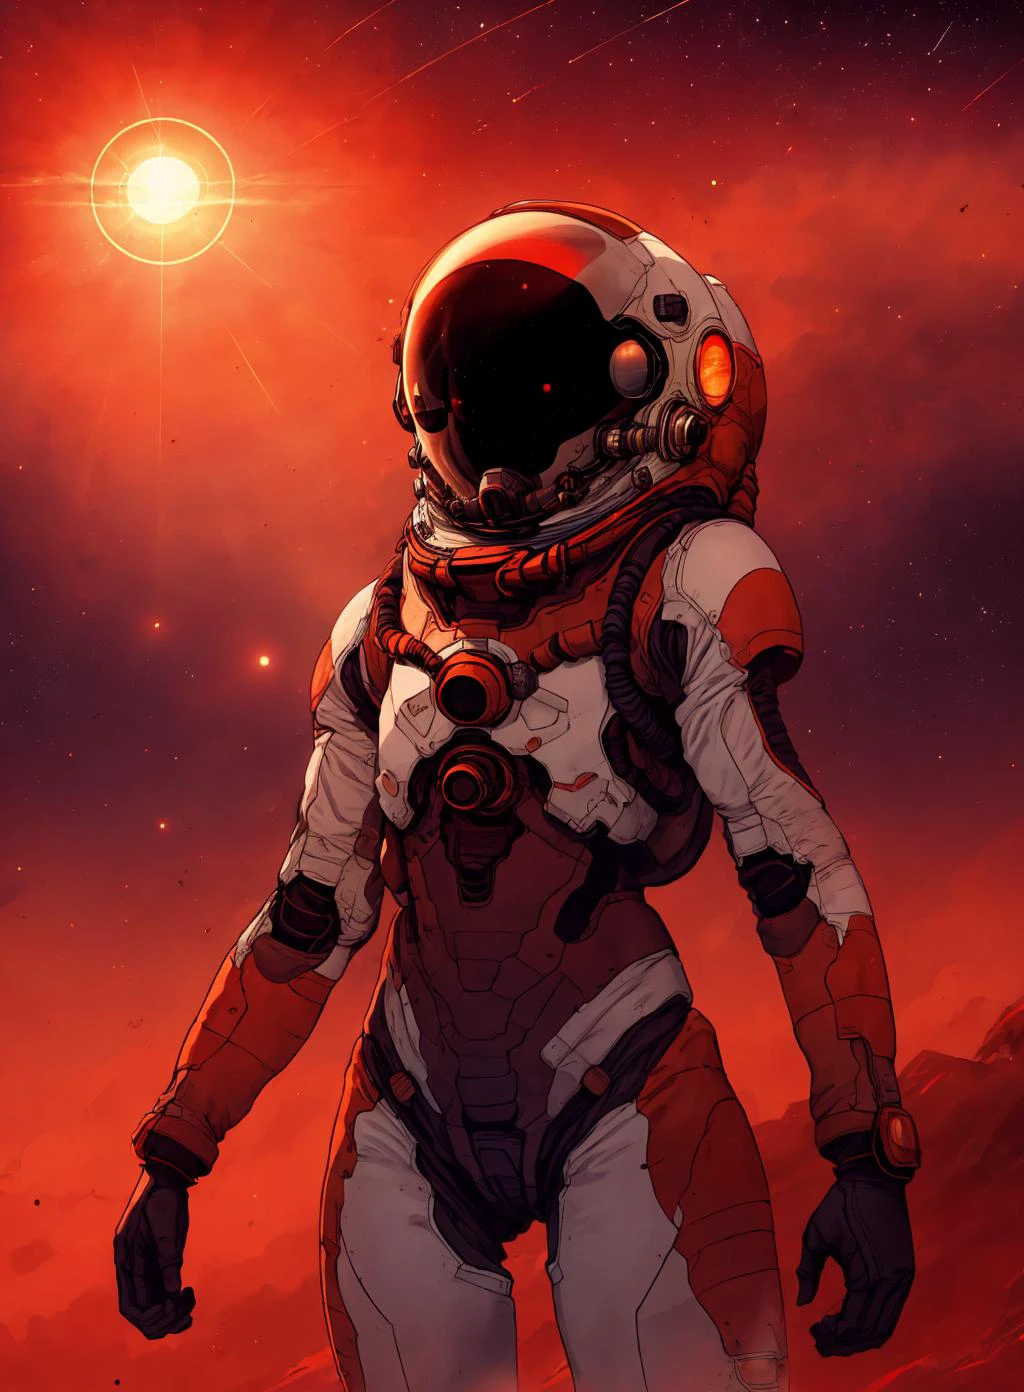 绘制一个地方,
火星, 太陽, 红色的天空, 宇航员远,
